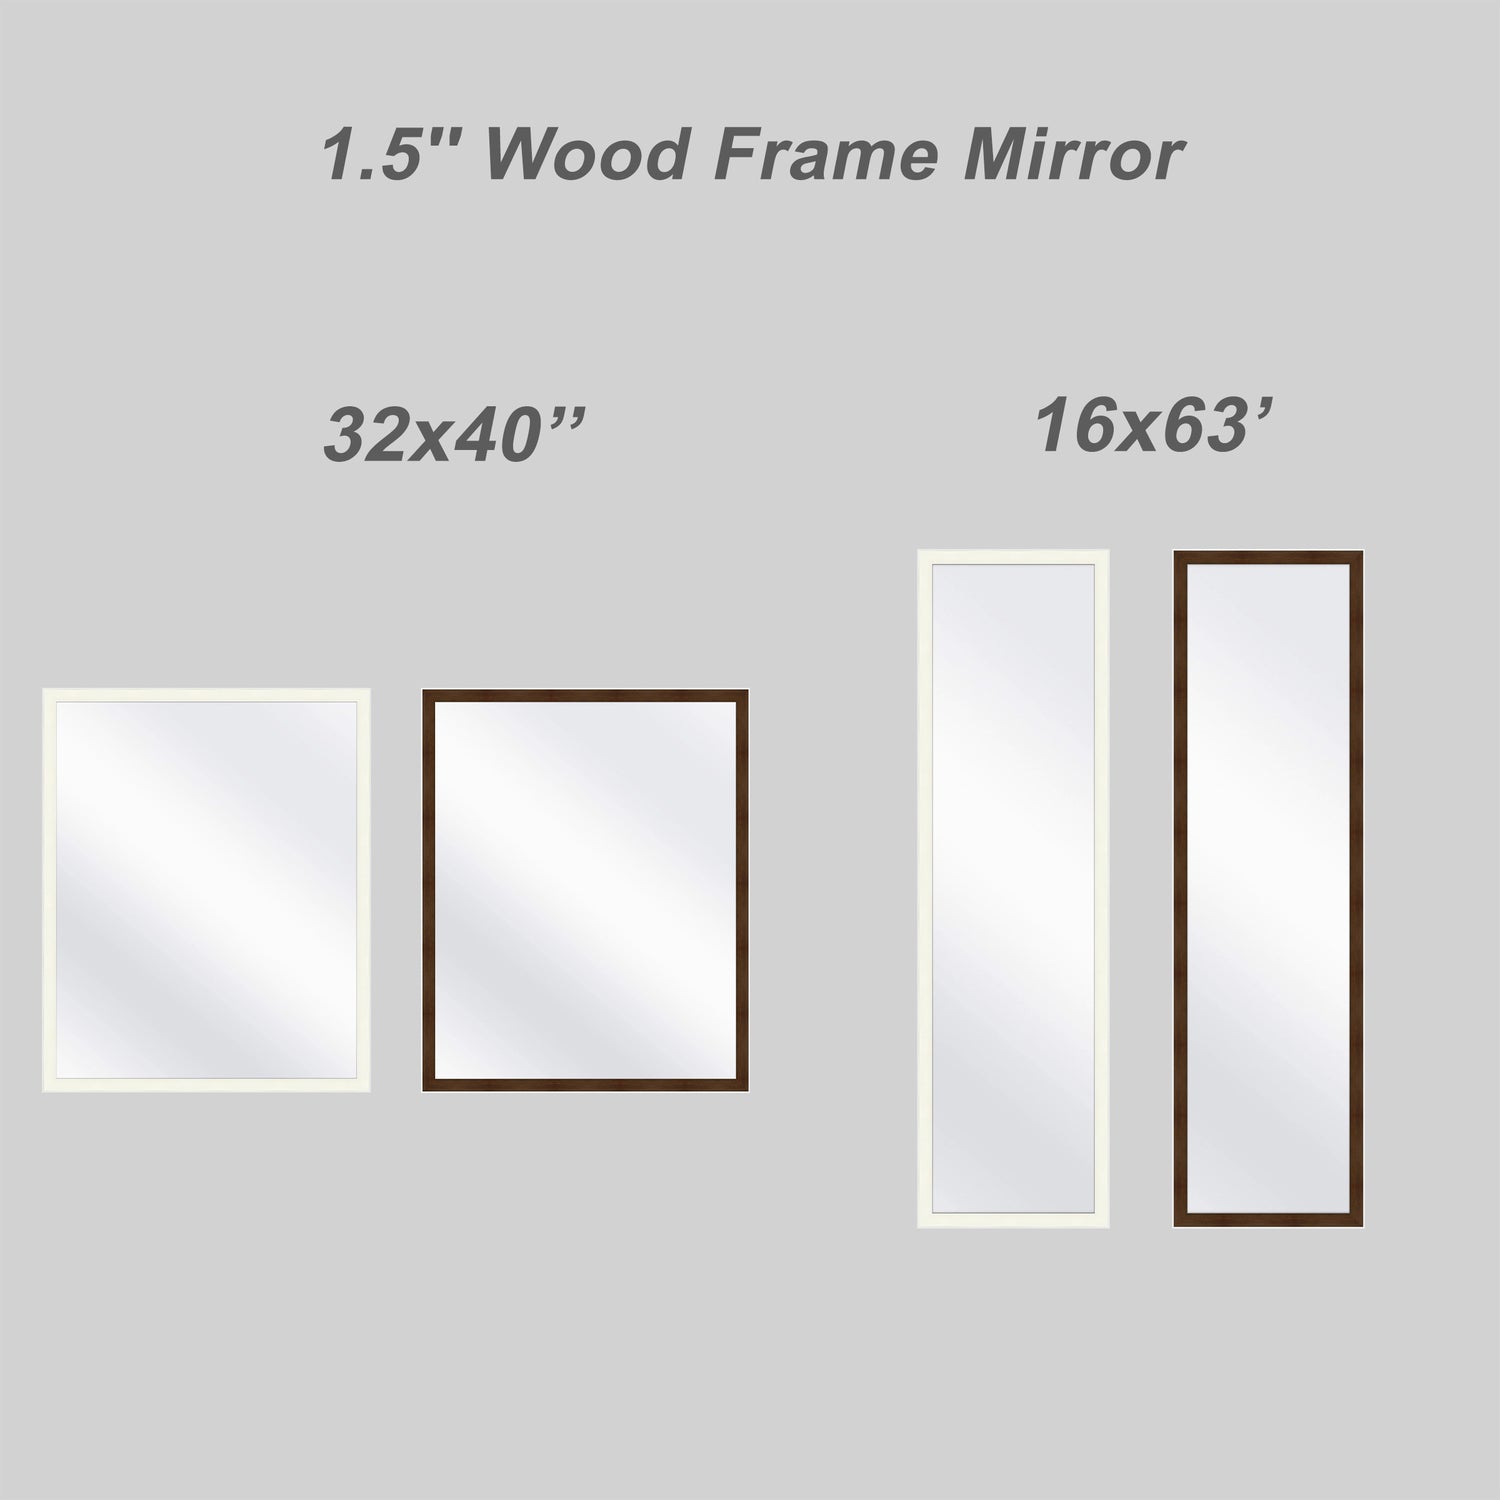 custom picture frames, custom frames, painting frames, custom photo frames, custom size picture frames, picture frame sizes, picture frames online